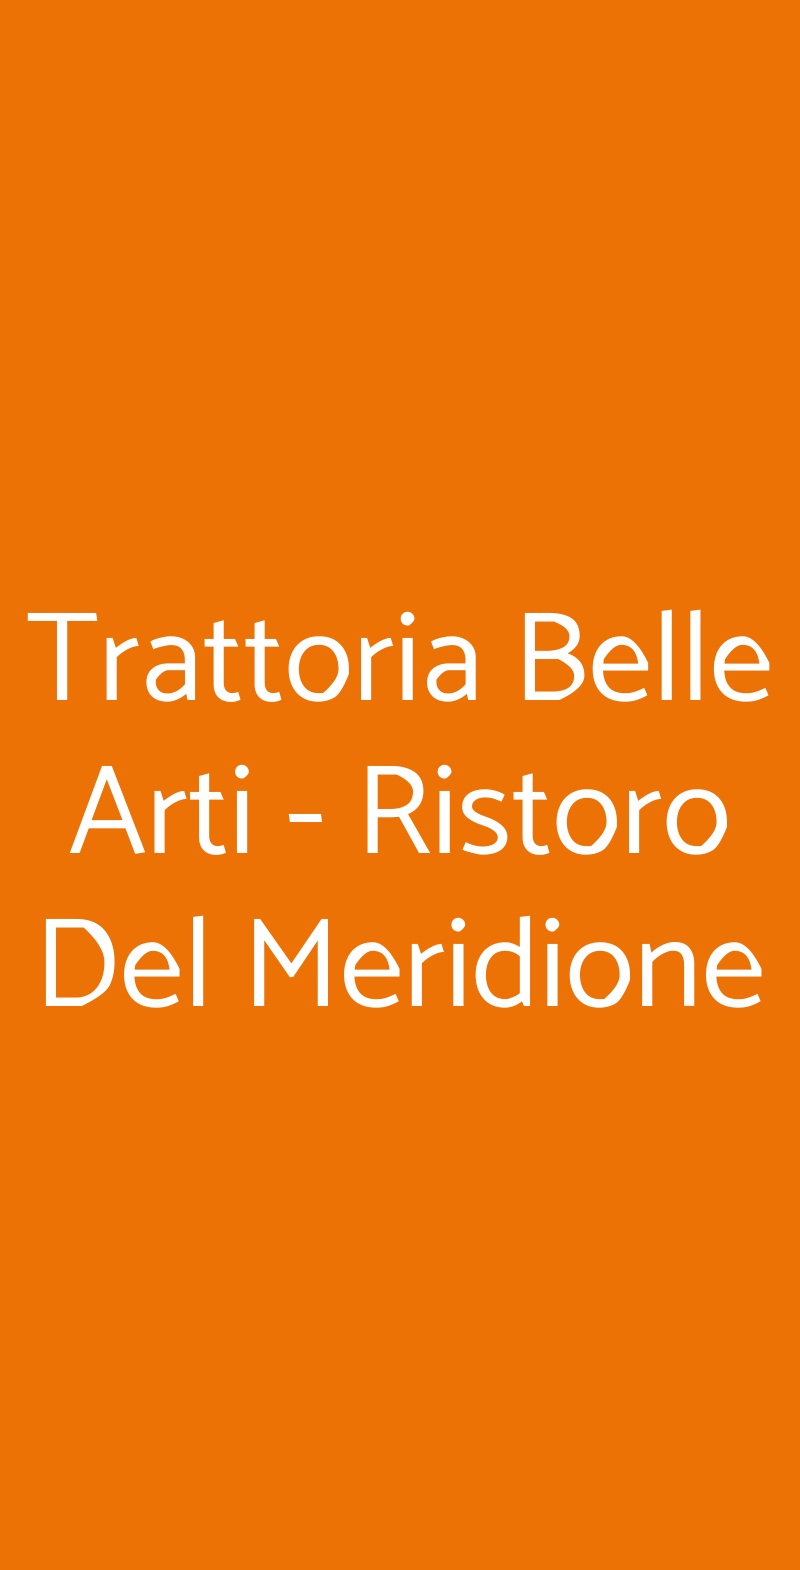 Trattoria Belle Arti - Ristoro Del Meridione Bologna menù 1 pagina